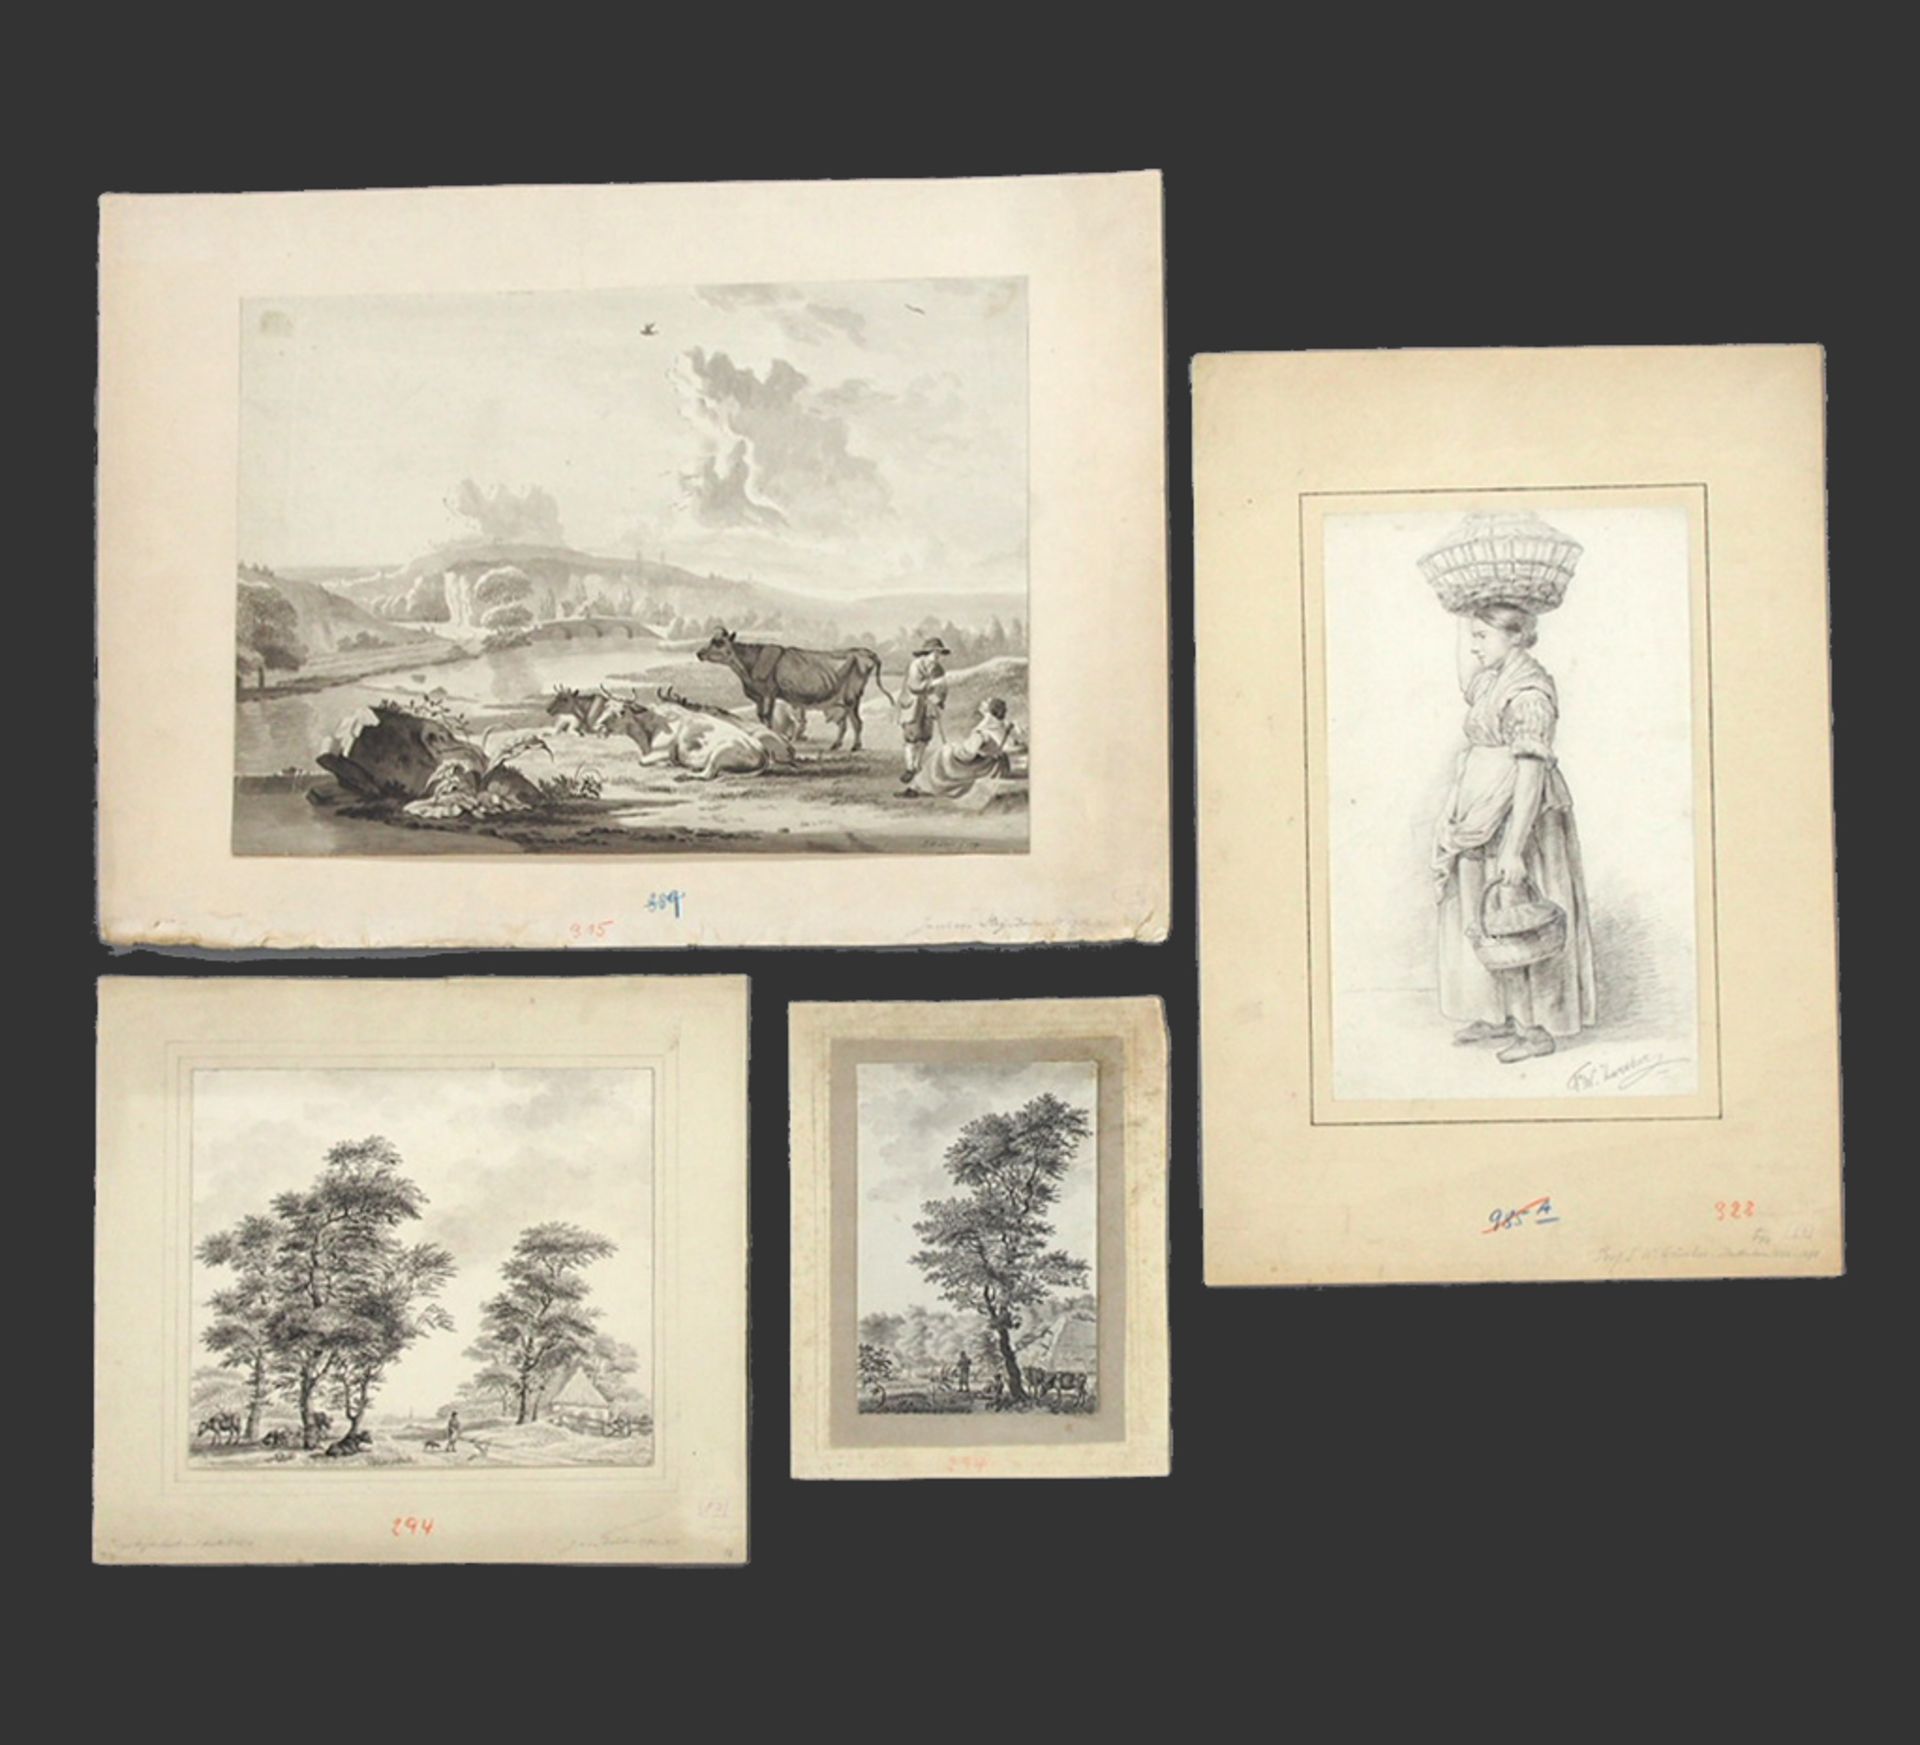 Vier Zeichnungen niederländischer Künstlers des 18./19. Jahrhunderts